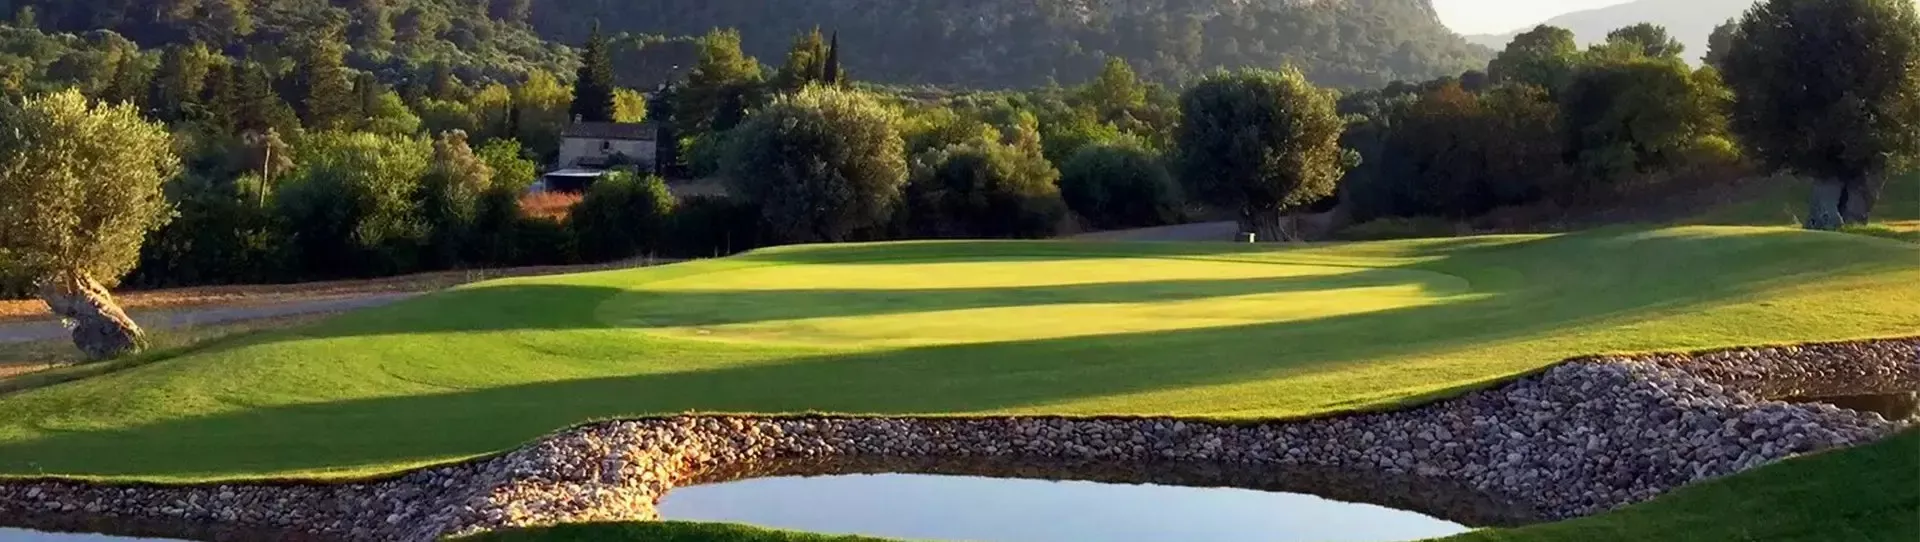 Spain golf courses - Pollensa Golf Course - Photo 1